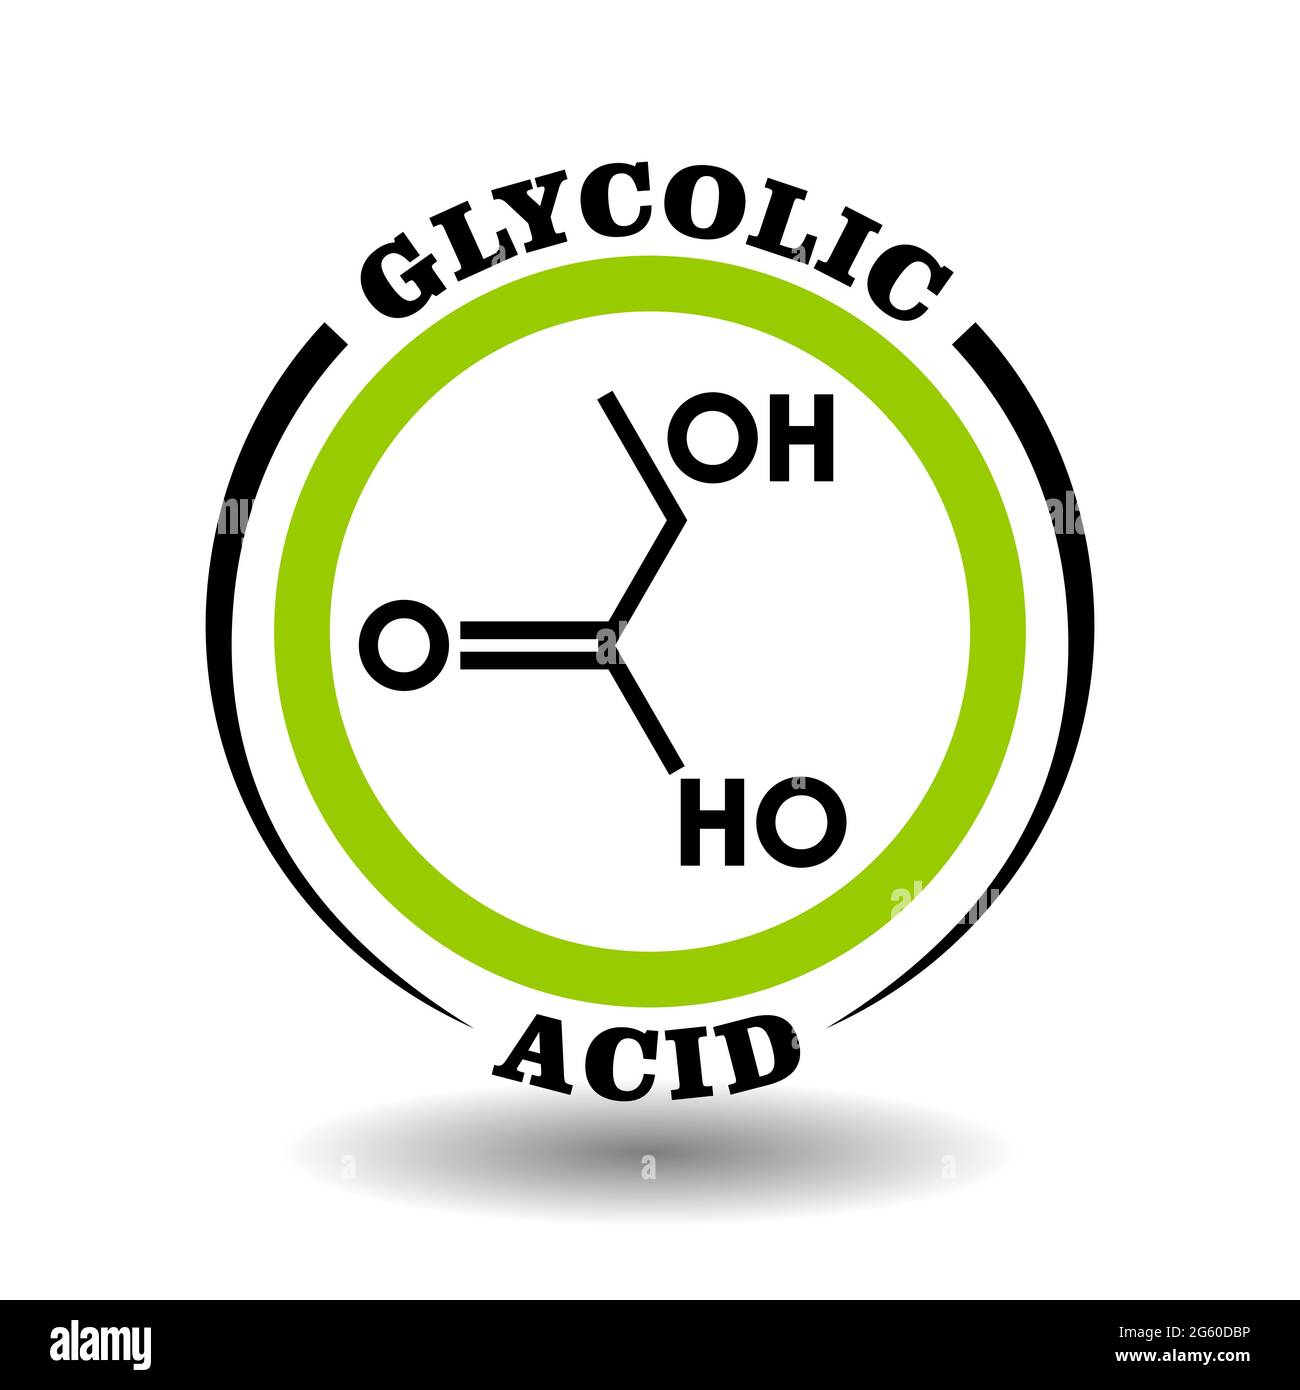 Icona vettoriale circolare con formula chimica dell'acido glicolico simbolo per l'imballaggio segni di cosmetici, etichette di prodotti medici con ingredienti glicolati Illustrazione Vettoriale